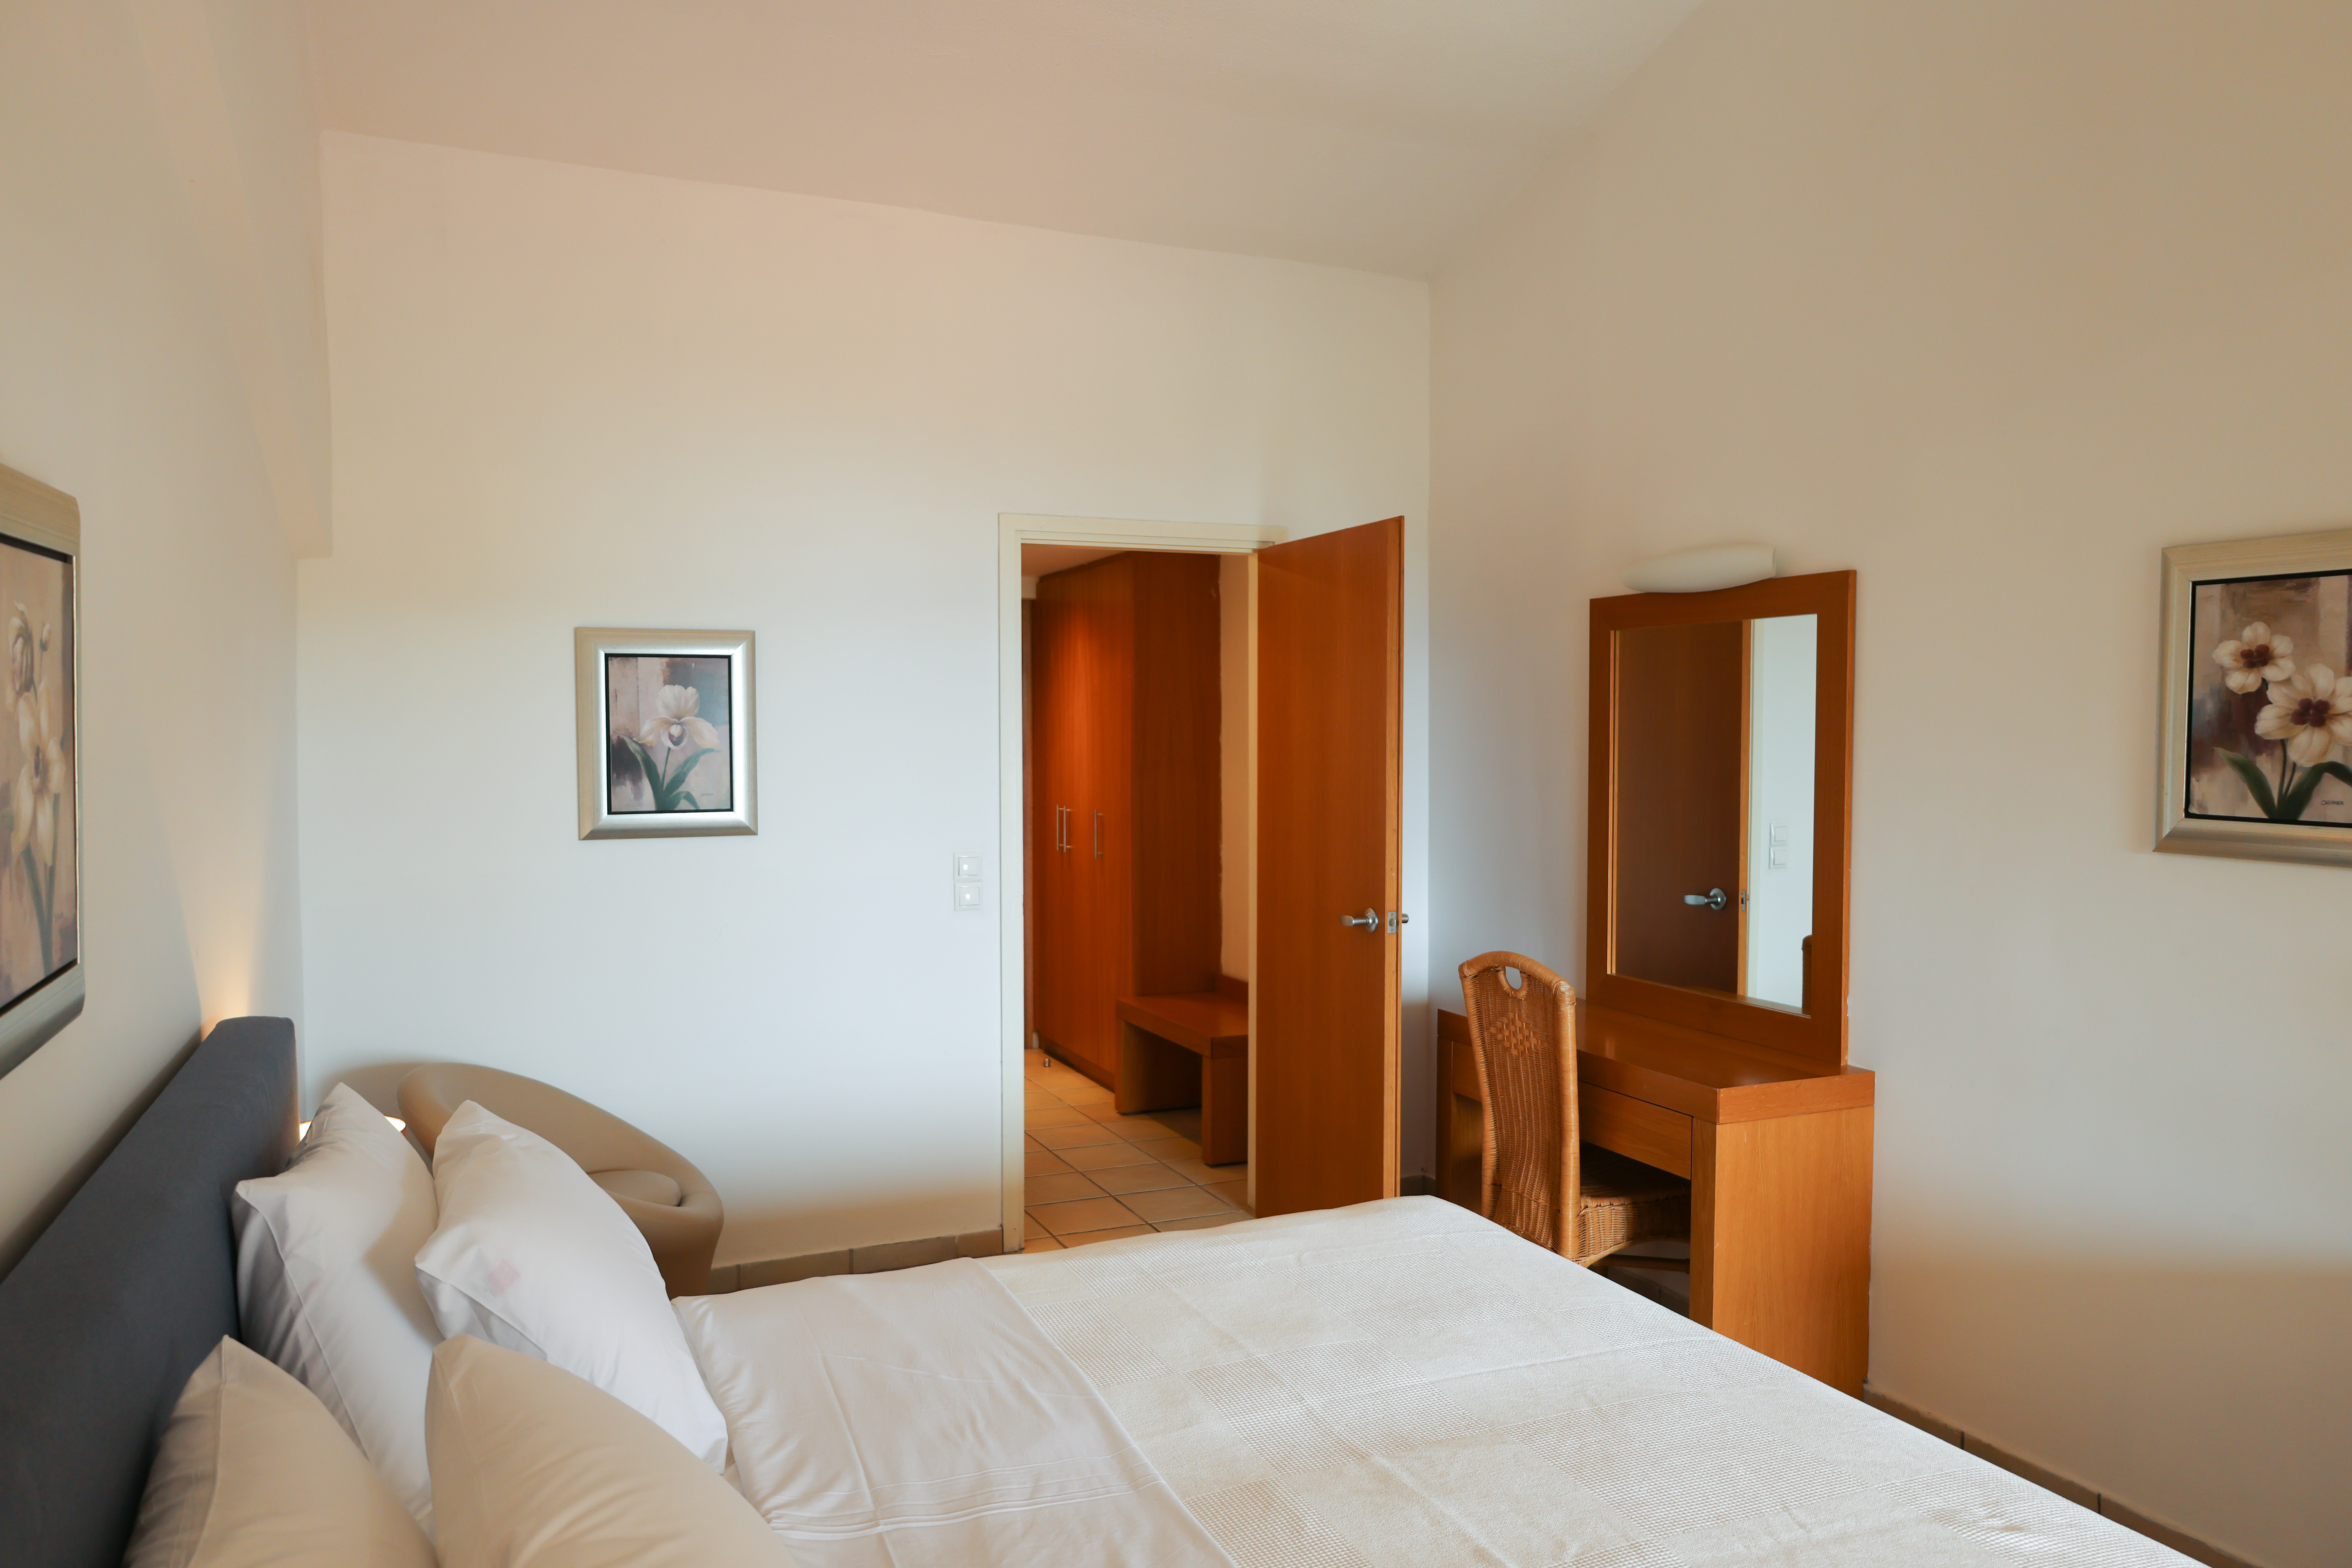     Kanapitsa Mare Hotel Standard Double Room